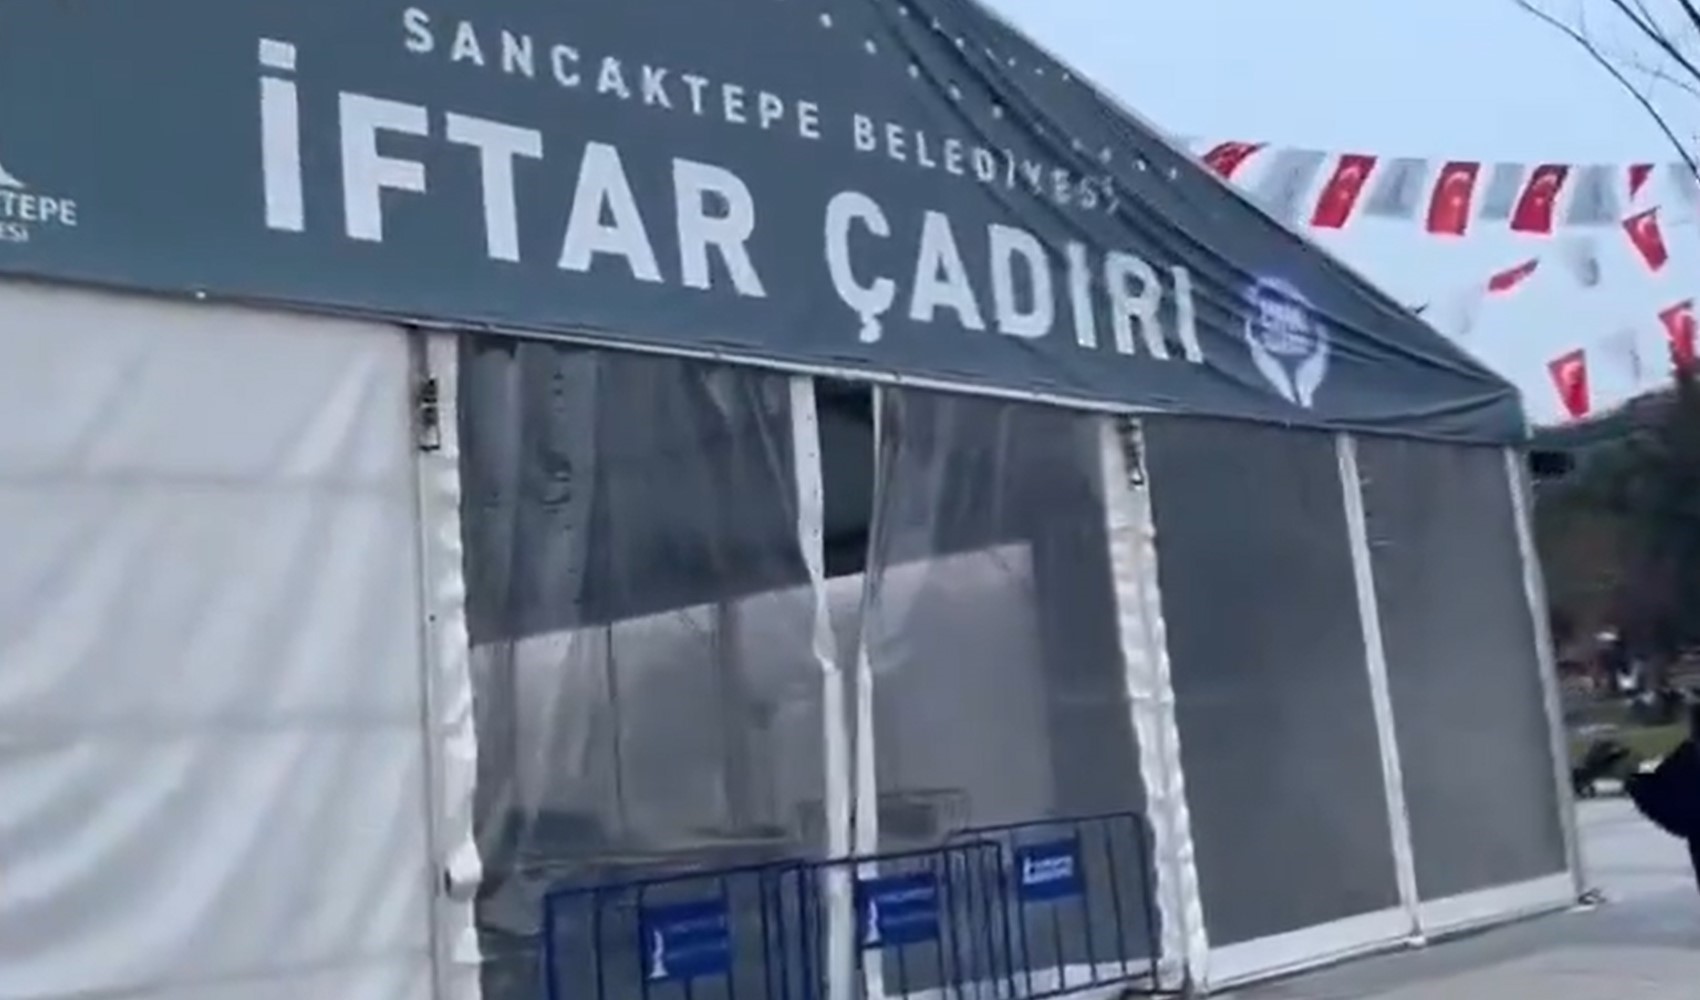 Seçim sonrası AKP'li belediye iftar çadırını kapattı tepkiler yağdı